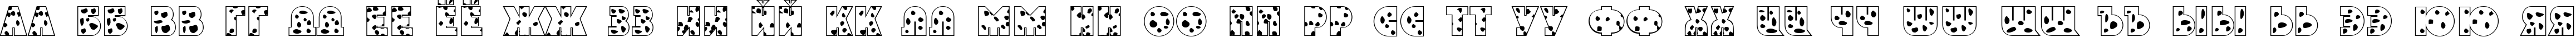 Пример написания русского алфавита шрифтом a_GrotoSpt